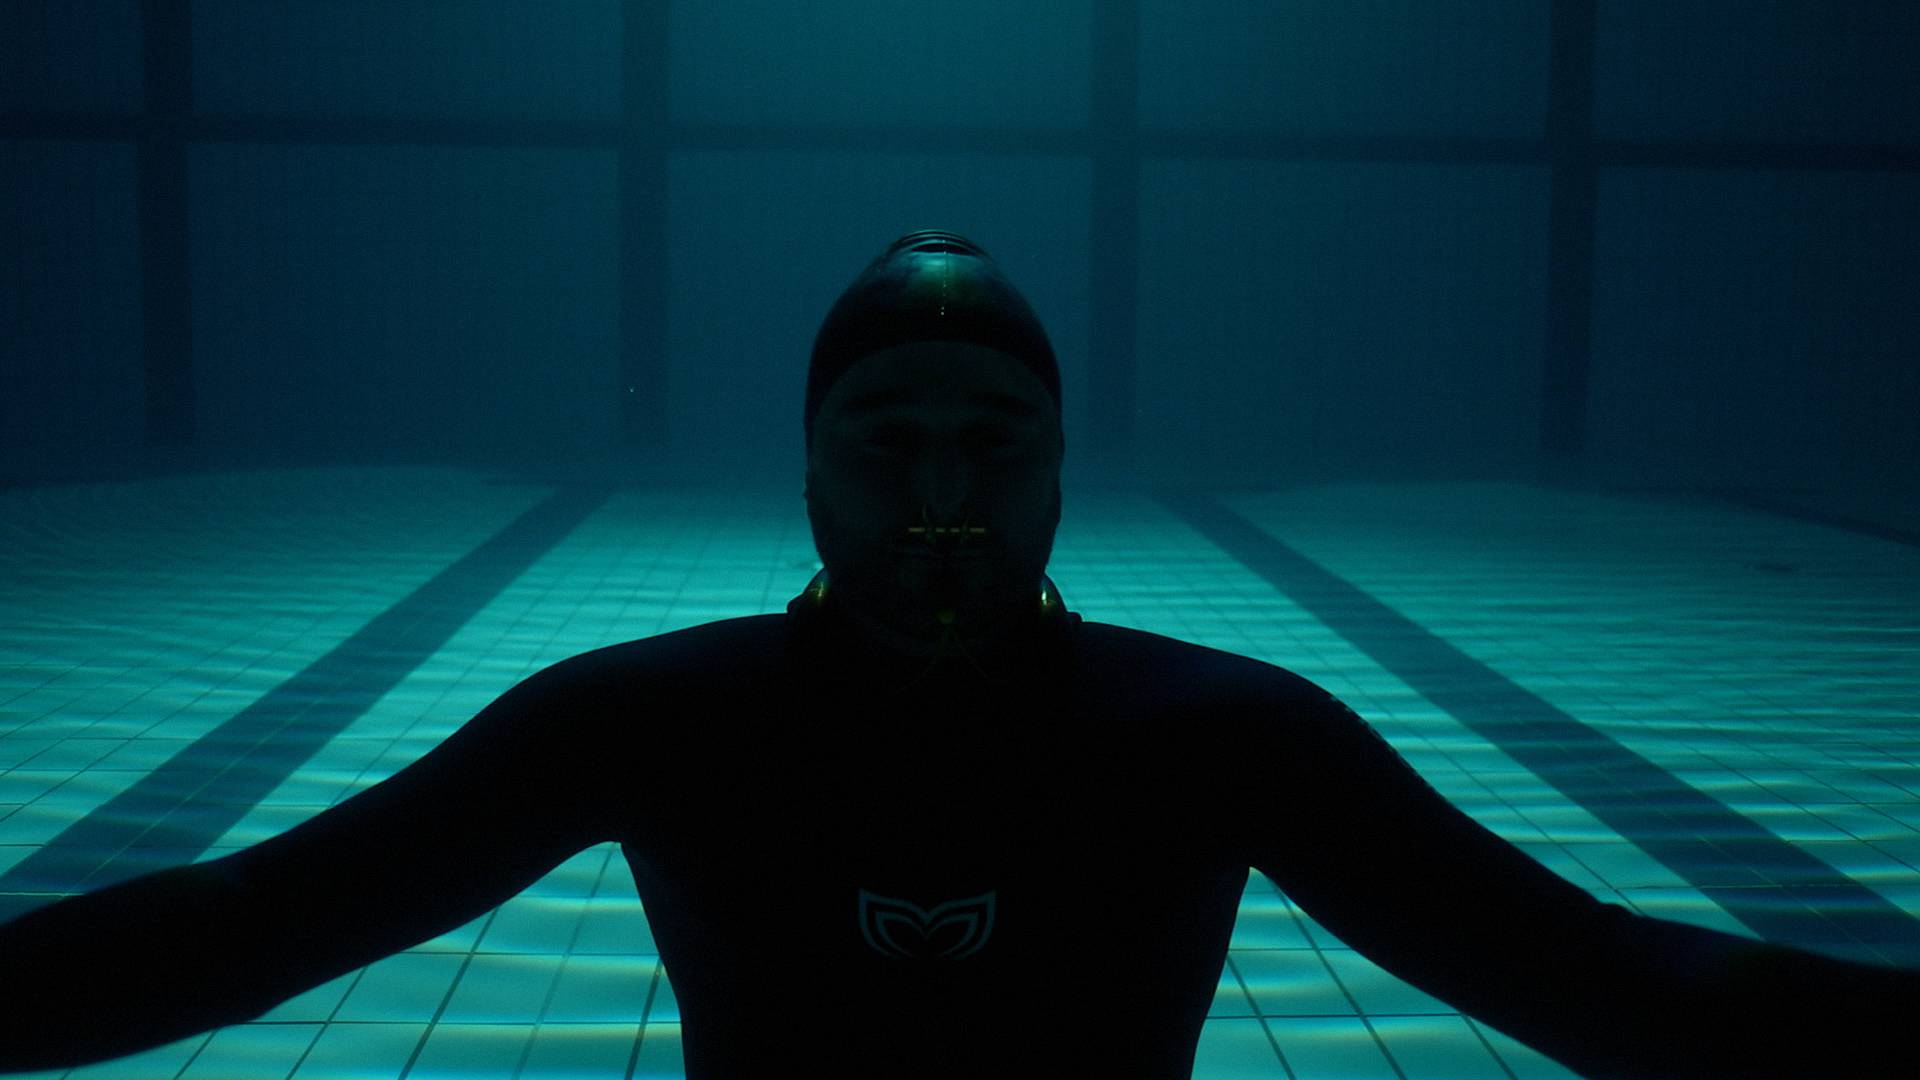 Nižetić snimio spot pod vodom: Osjećaj kada zadržim dah i zaronim je nešto najposebnije